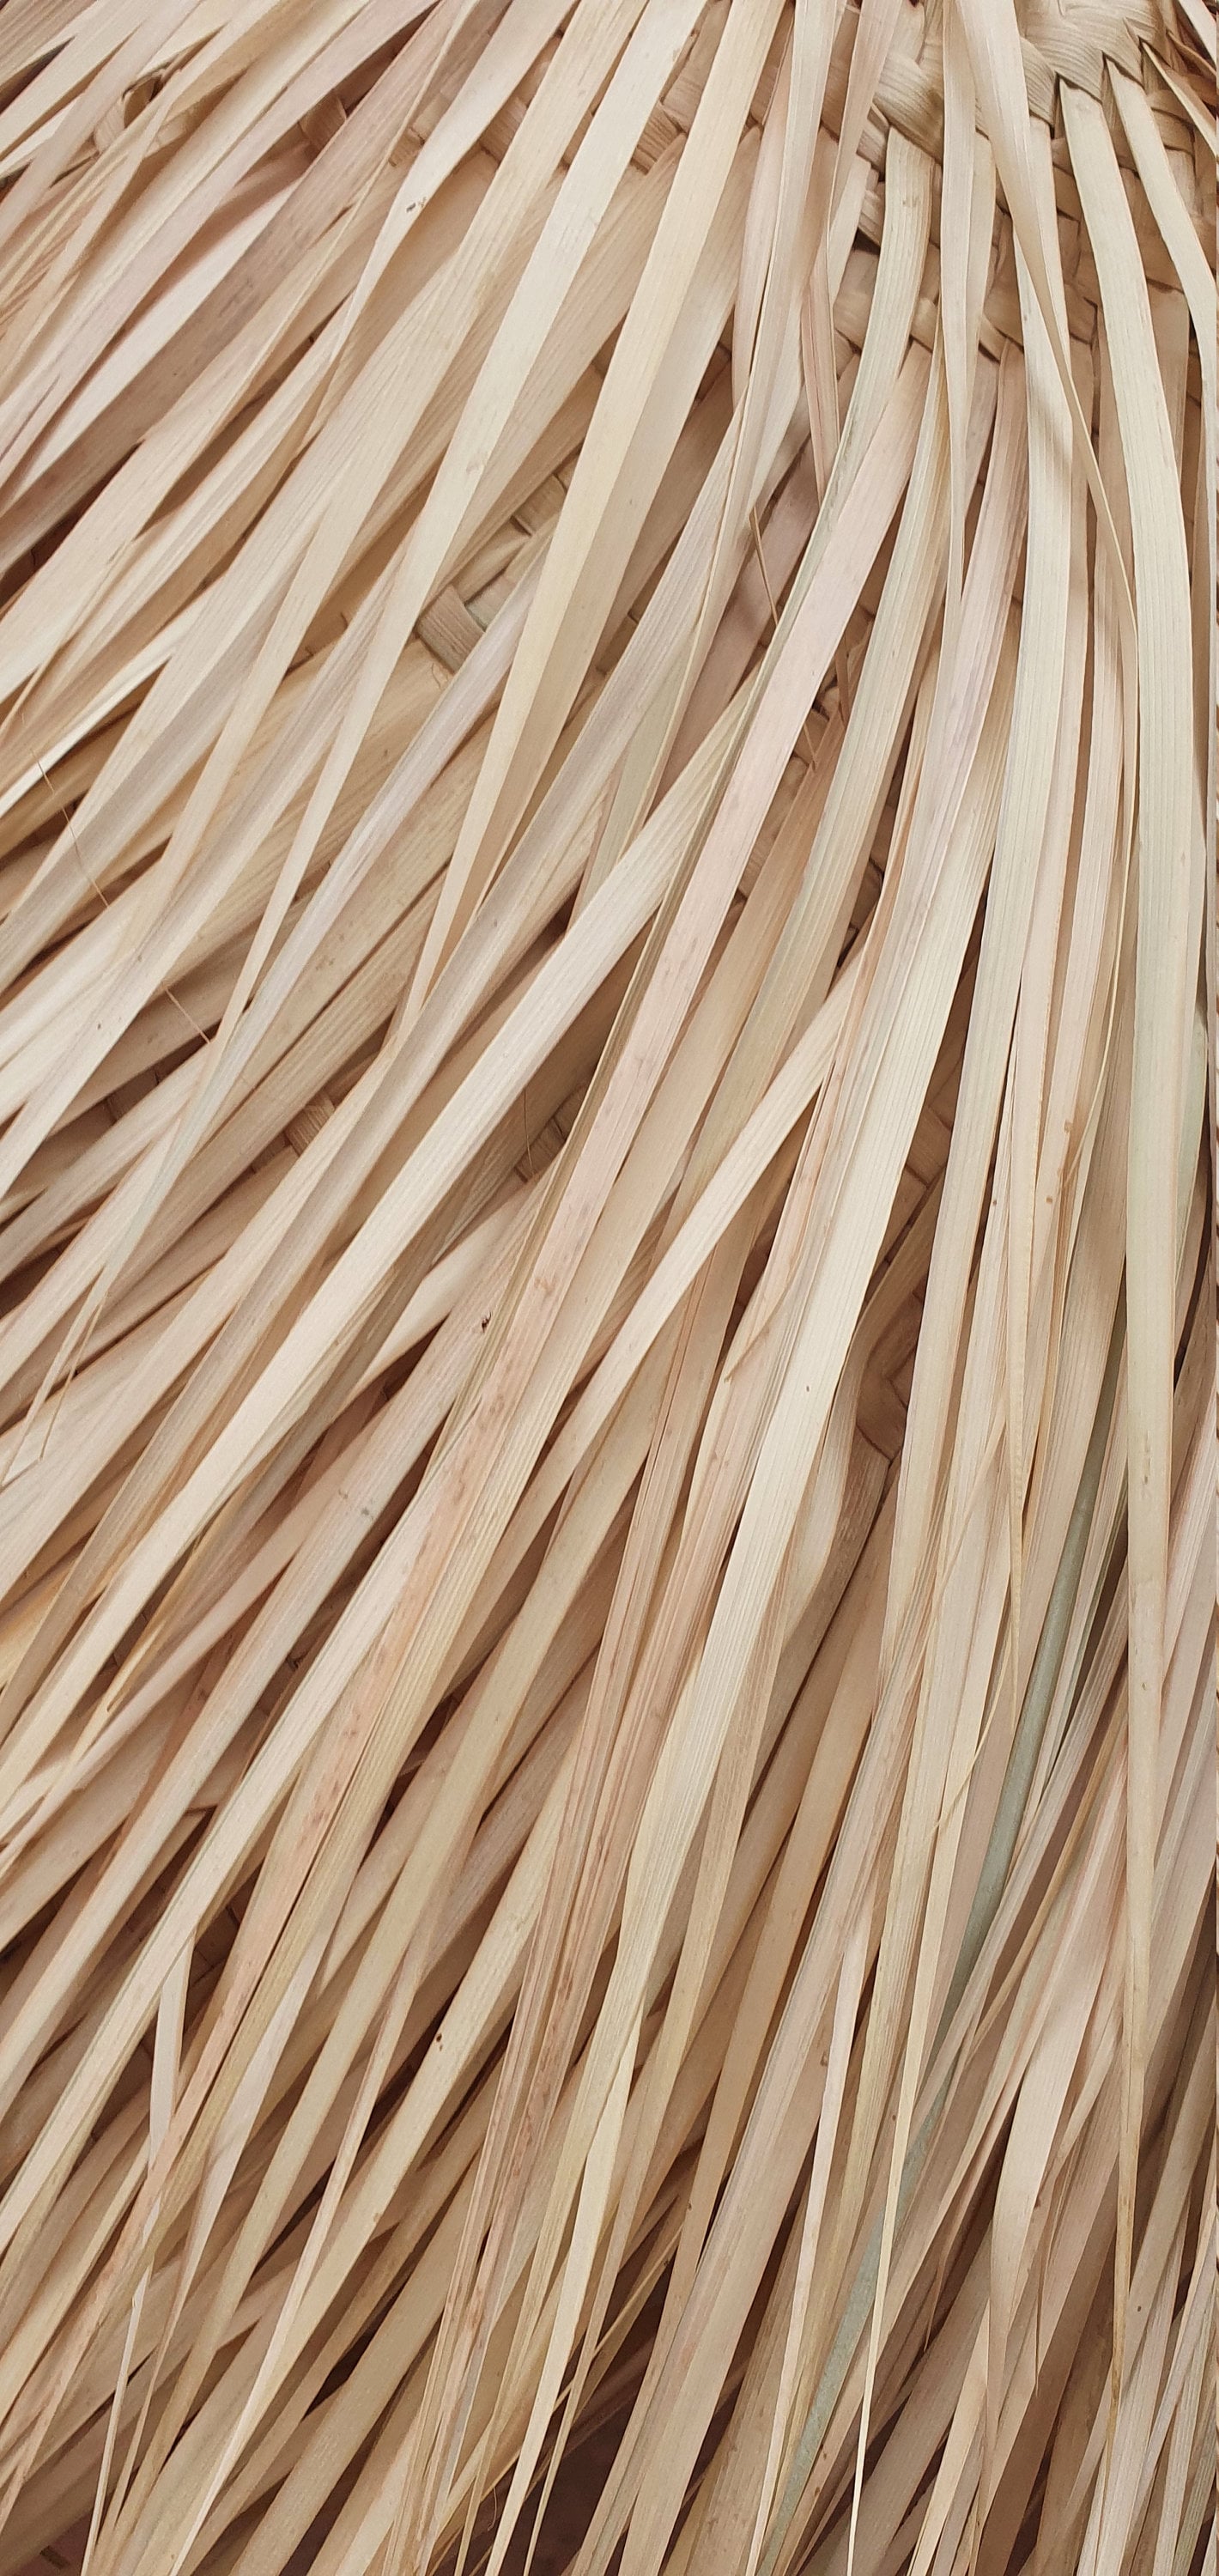 Une magnifique suspension en fibre de palmier tressé avec une ambiance bohème.